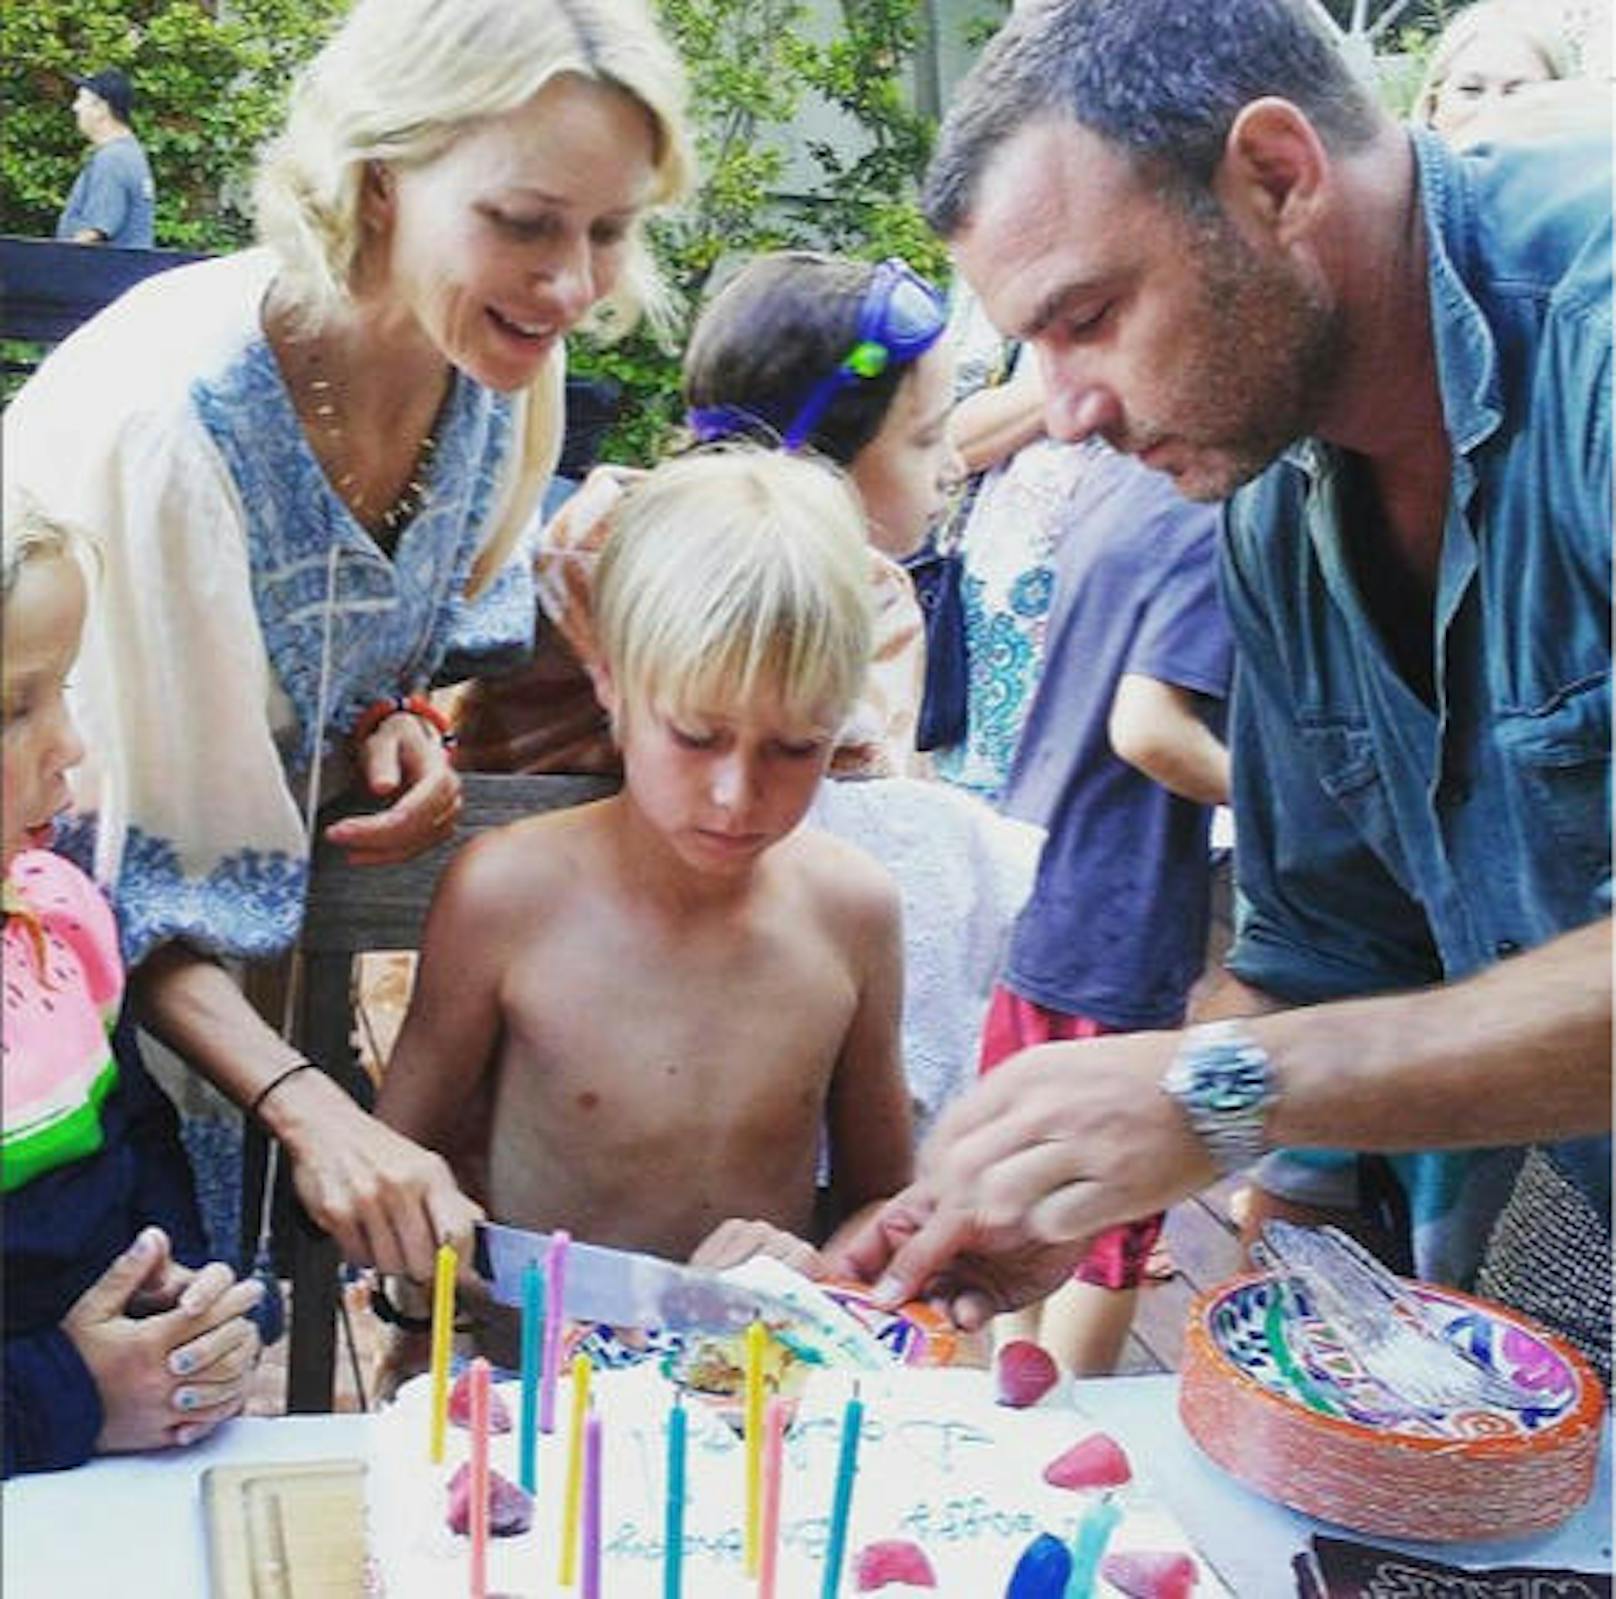 23.11.2018: "Nur einige Dinge, für die ich dankbar bin", schrieb Schauspieler Liev Schreiber zu diesem Foto, das ihn mit seiner Ex-Frau Naomi Watts und ihren gemeinsamen Kindern zeigt. Die Familie verbrachte Thanksgiving zusammen.